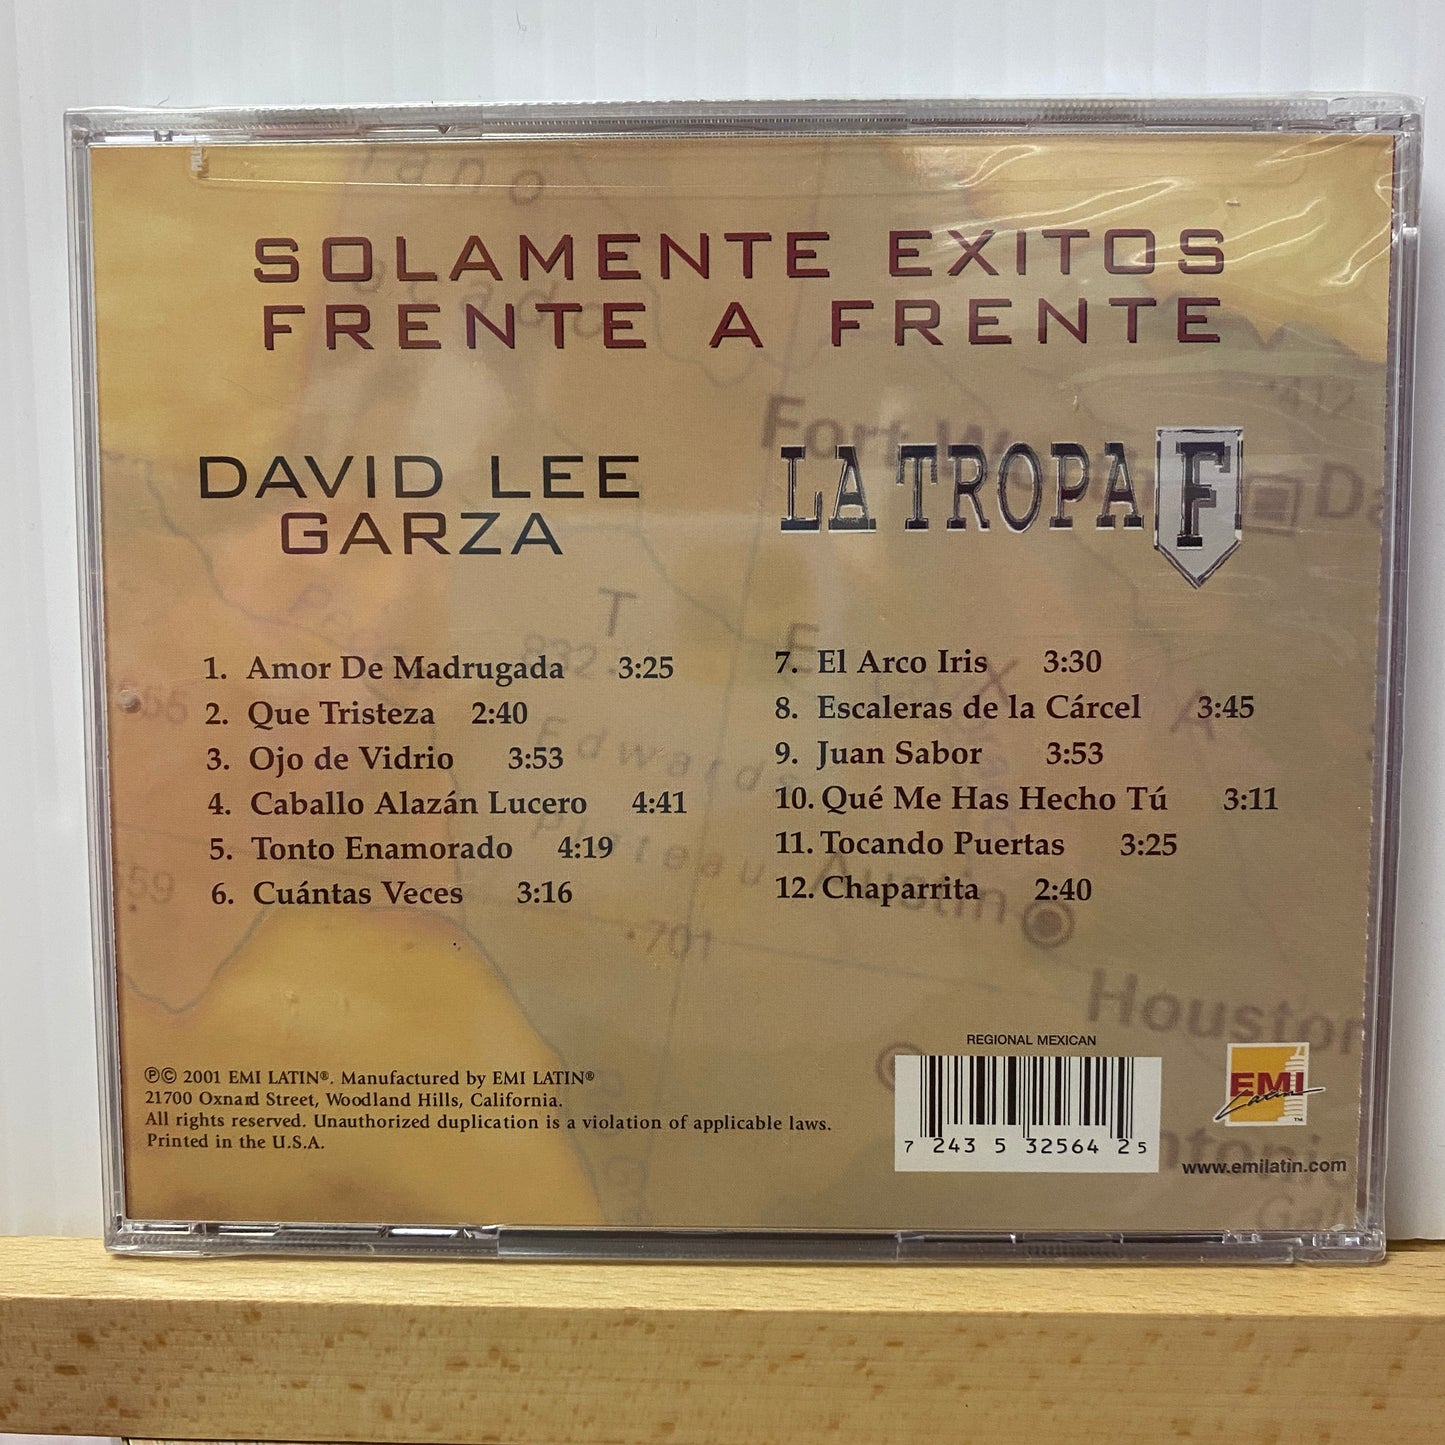 David Lee Garza & Tropa F - Frente A Frente *2001 (Sealed CD)